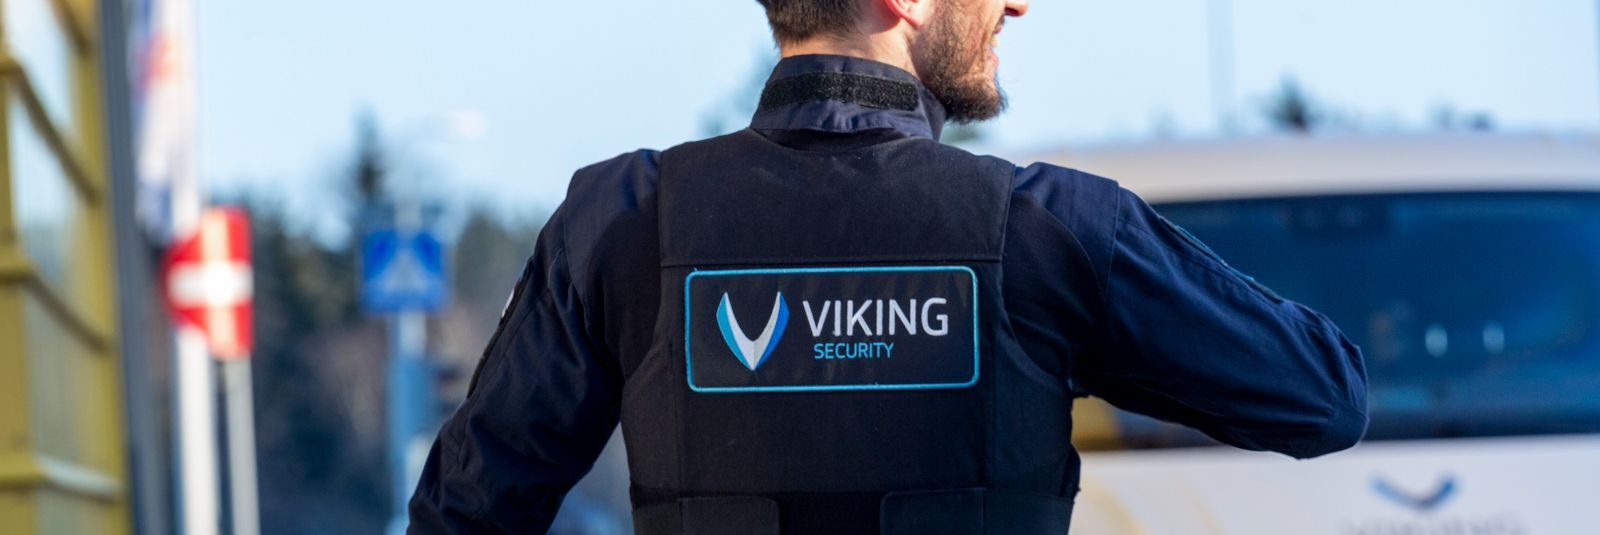 Turvalisus on oluline igas eluvaldkonnas ning Viking Security AS on tõestanud end kui juhtiv turvateenuste pakkuja, kellel on mitmeid eristuvaid tugevusi, mis m